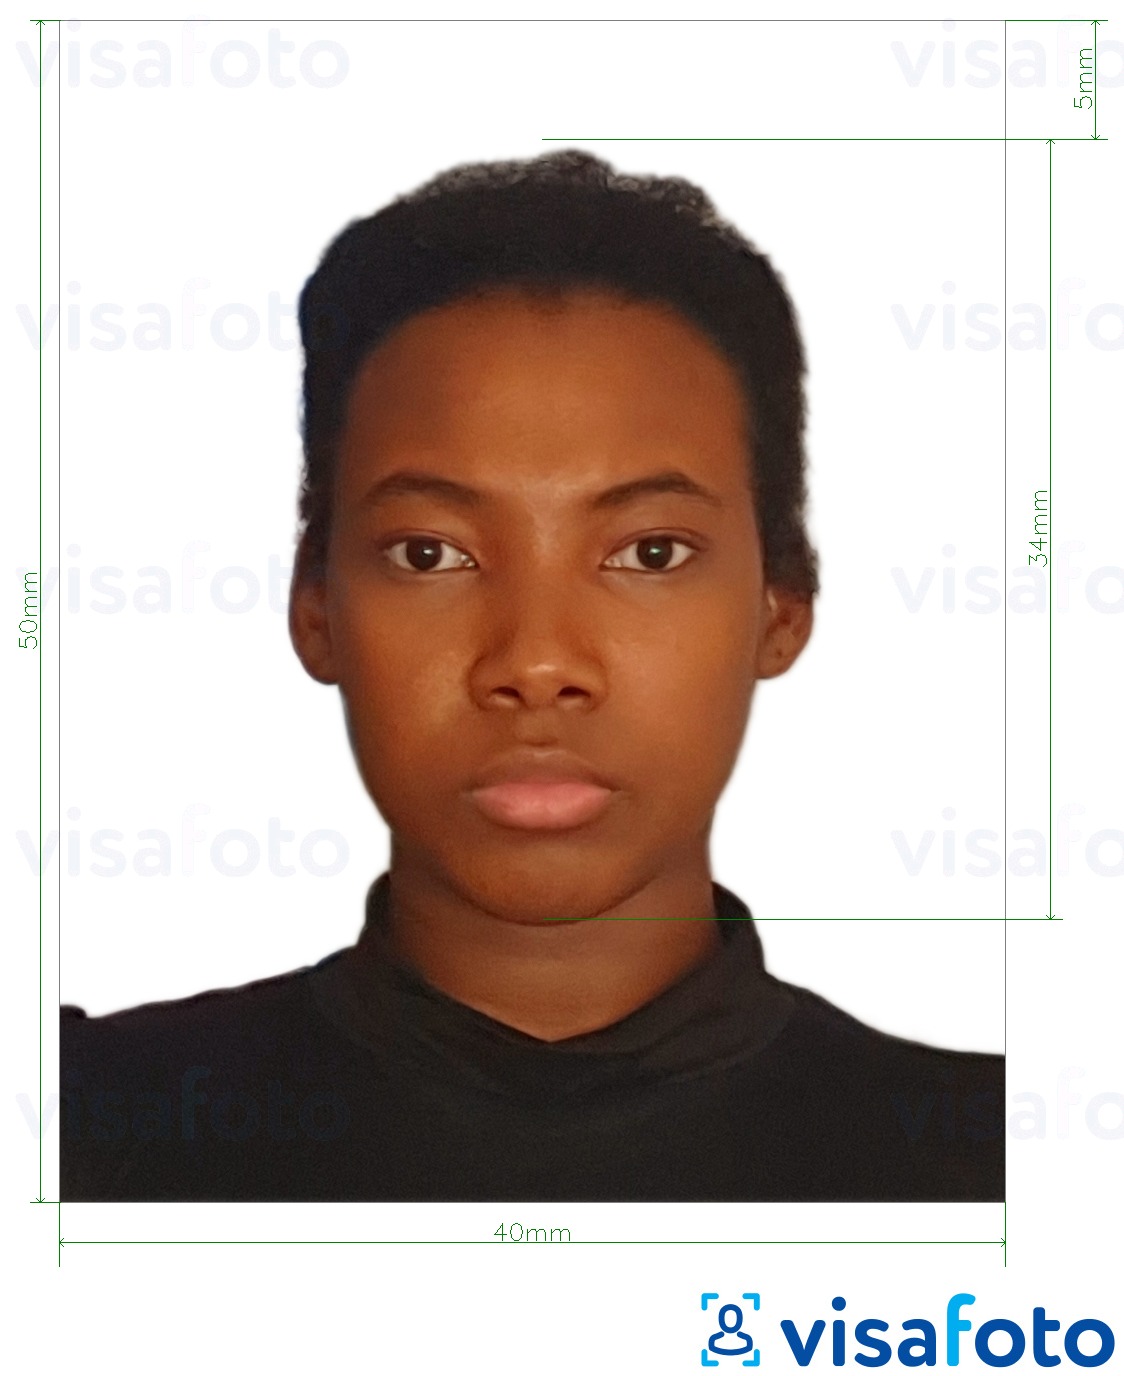 Primjer fotografije za Kamerunska putovnica 4x5 cm (40x50 mm) s točno određenom veličinom